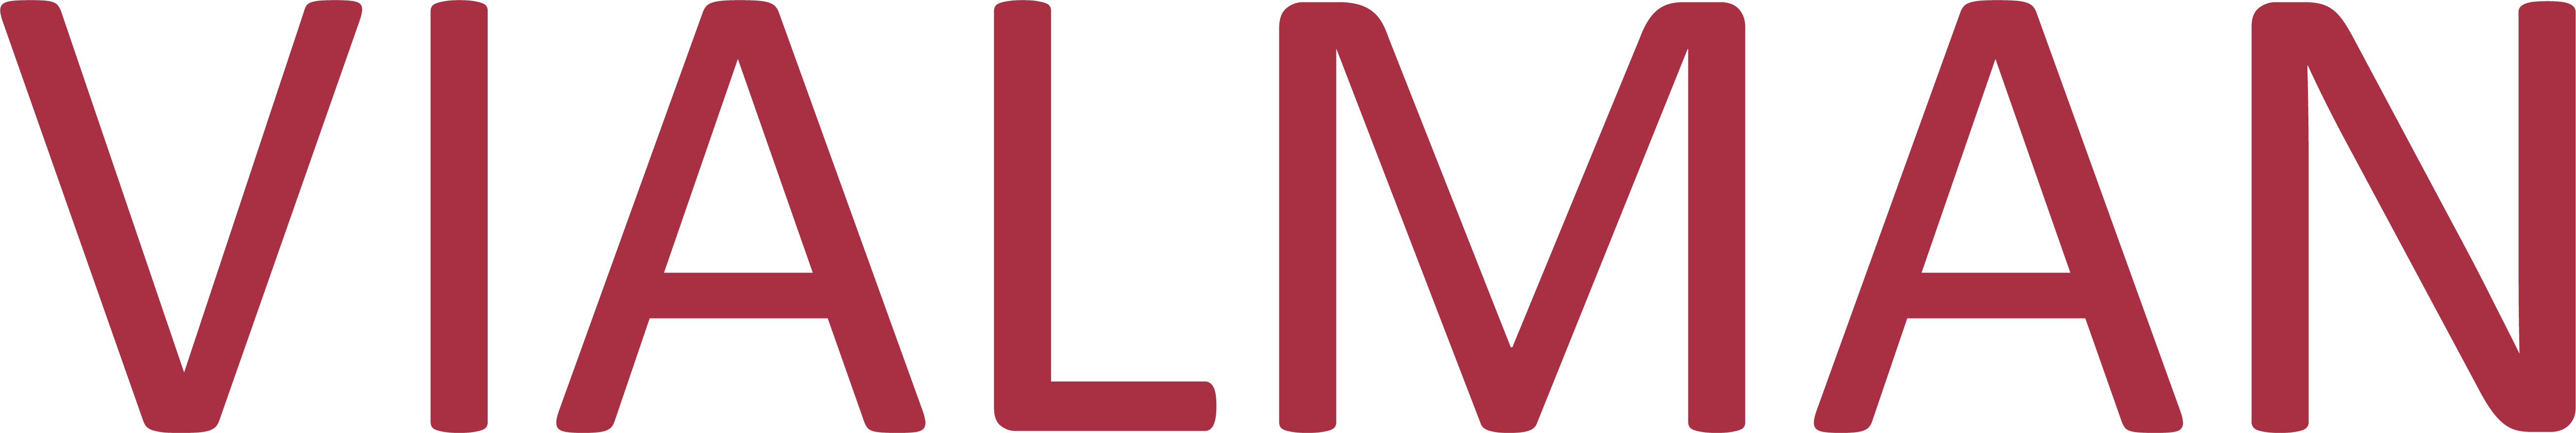 Logotipo de Vialman empresa textil hogar